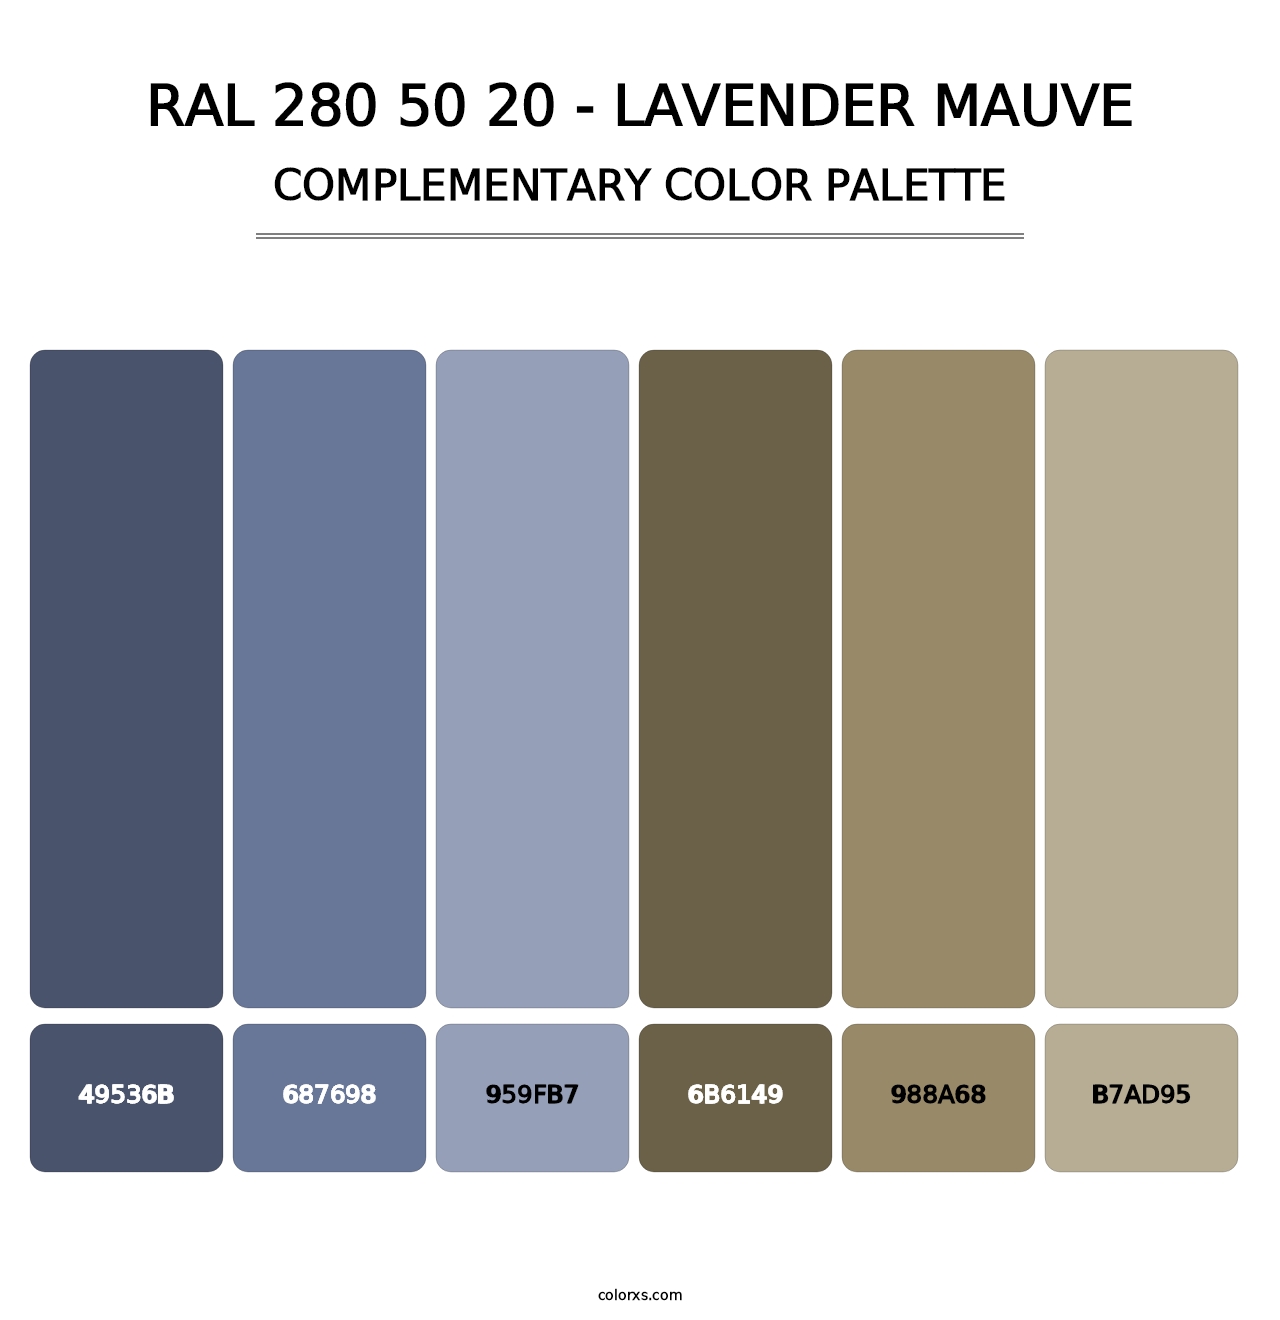 RAL 280 50 20 - Lavender Mauve - Complementary Color Palette